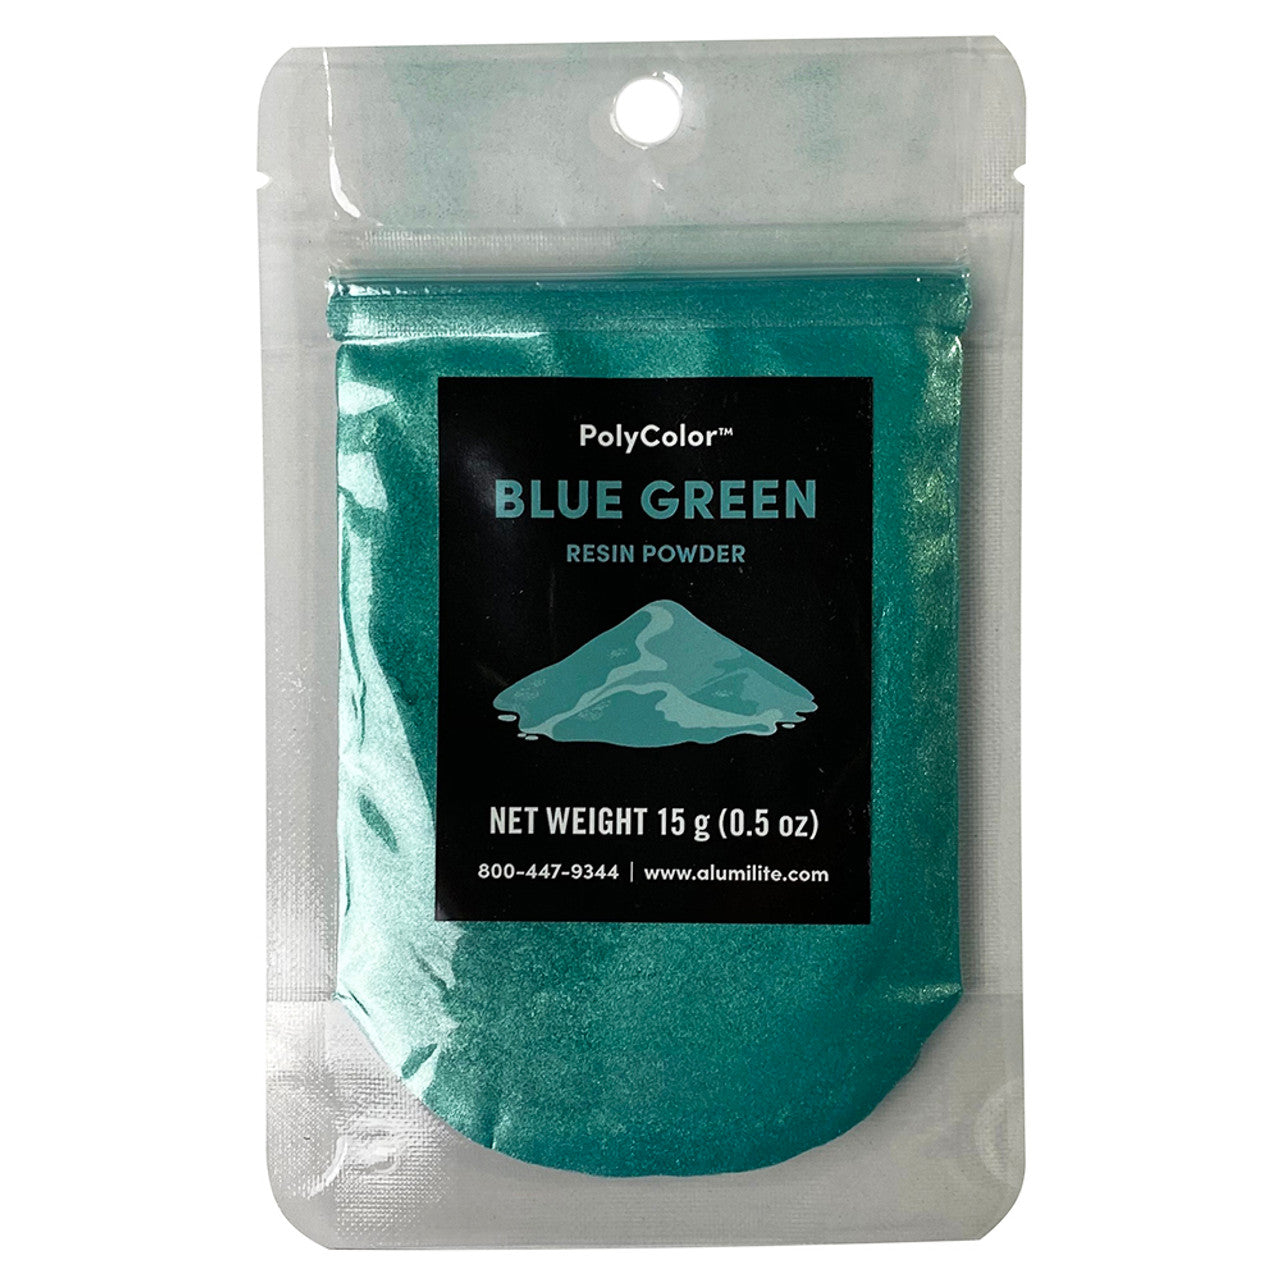 Polycolor Resin Powder Blue Green Metallic 15 G Bag (0.5 oz)  AL31013-15G